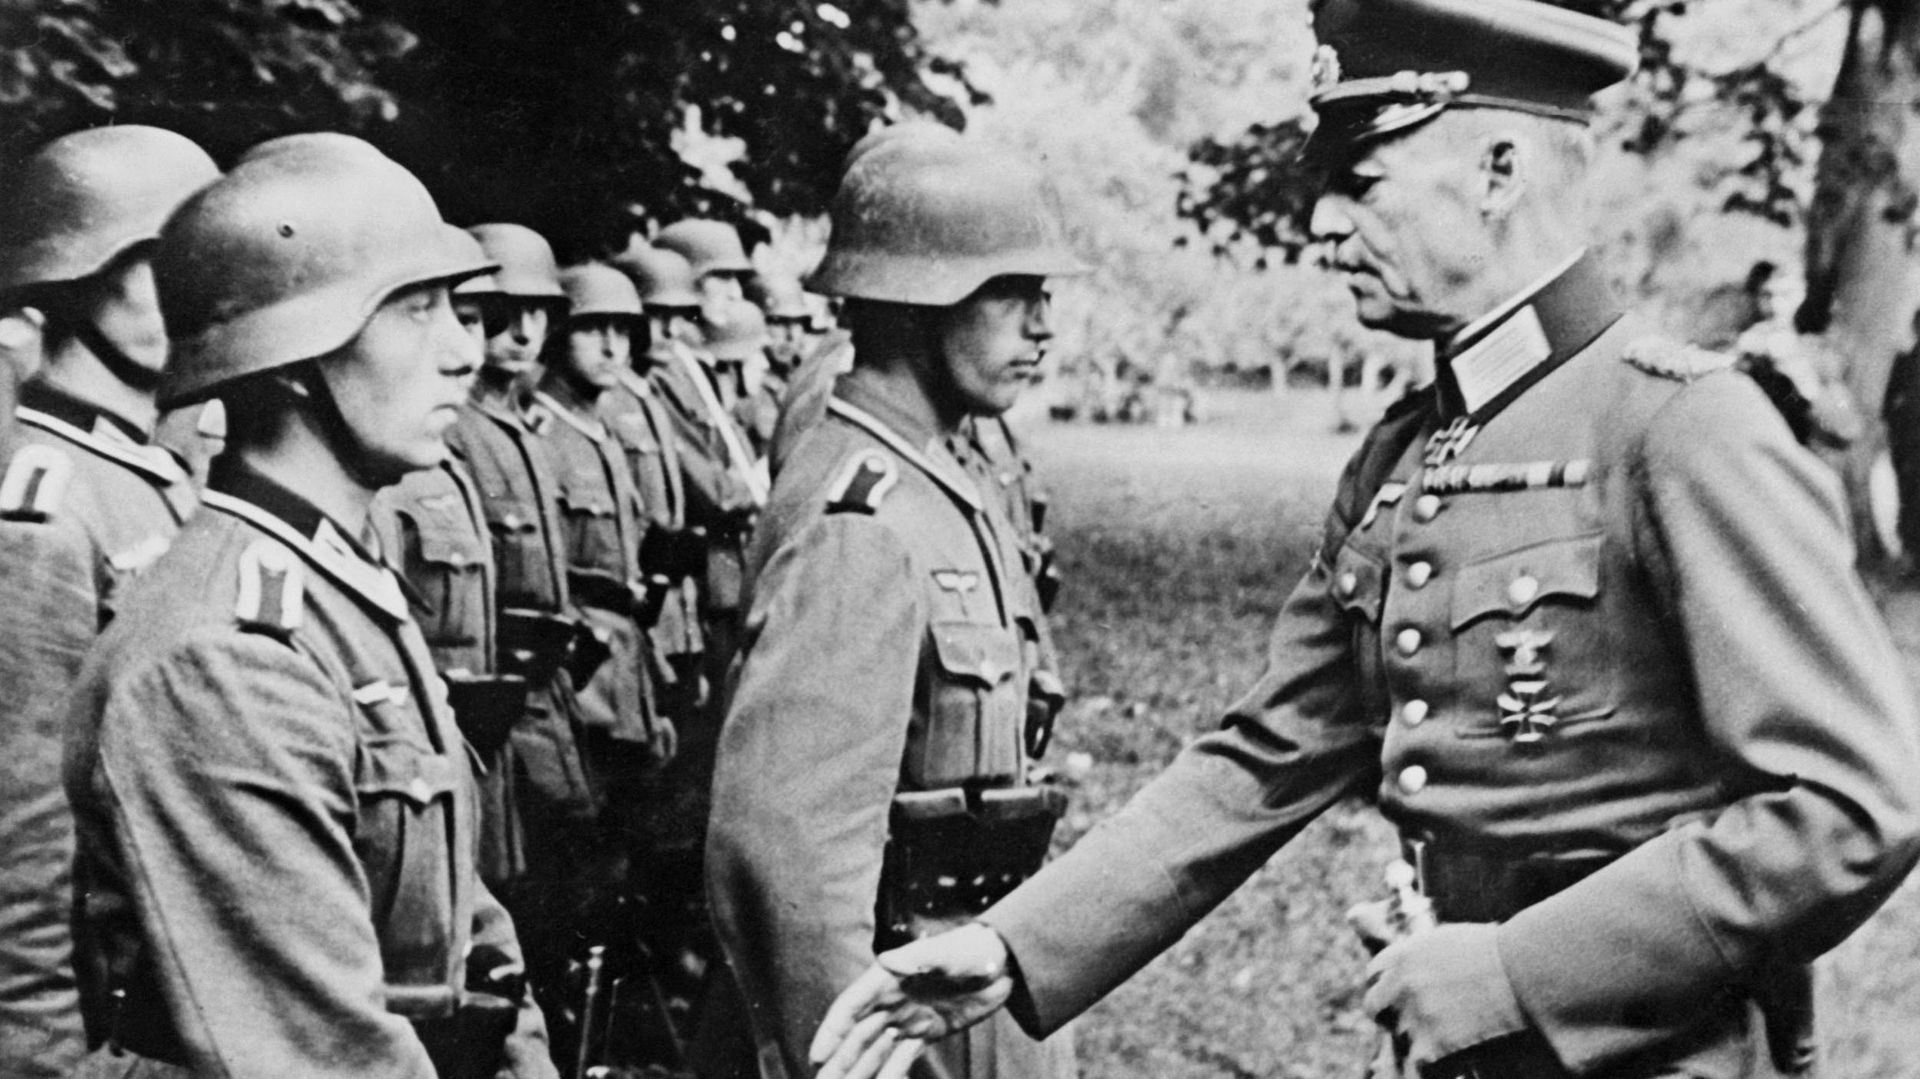 Le maréchal von Rundstedt inspecte des troupes.